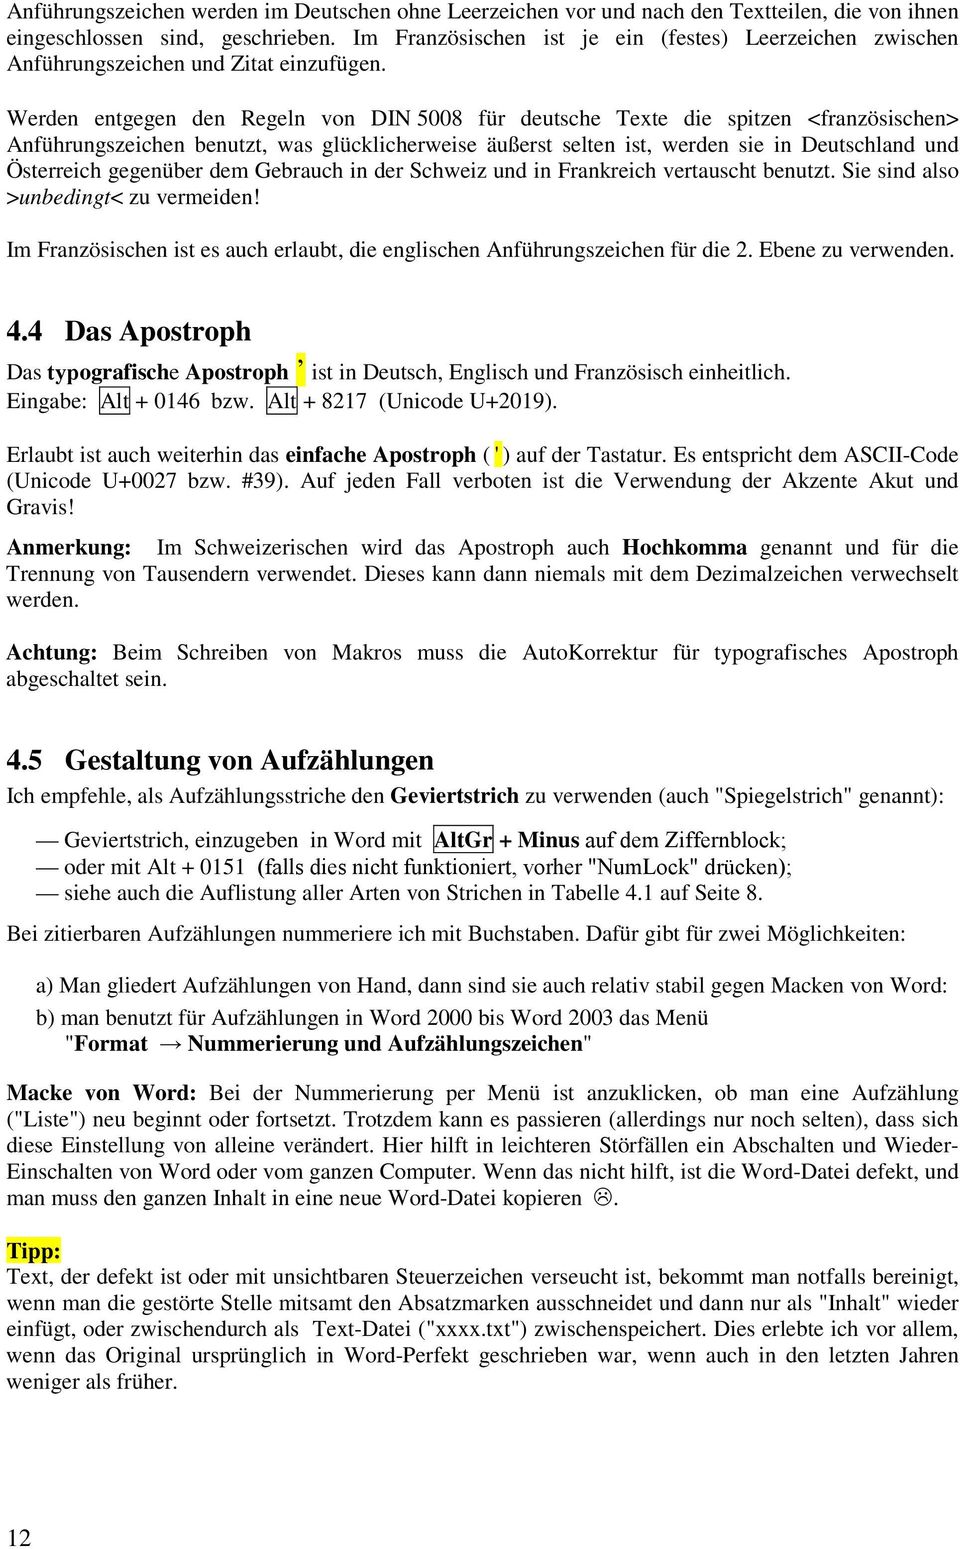 Werden entgegen den Regeln von DIN 5008 für deutsche Texte spitzen französischen Anführungszeichen